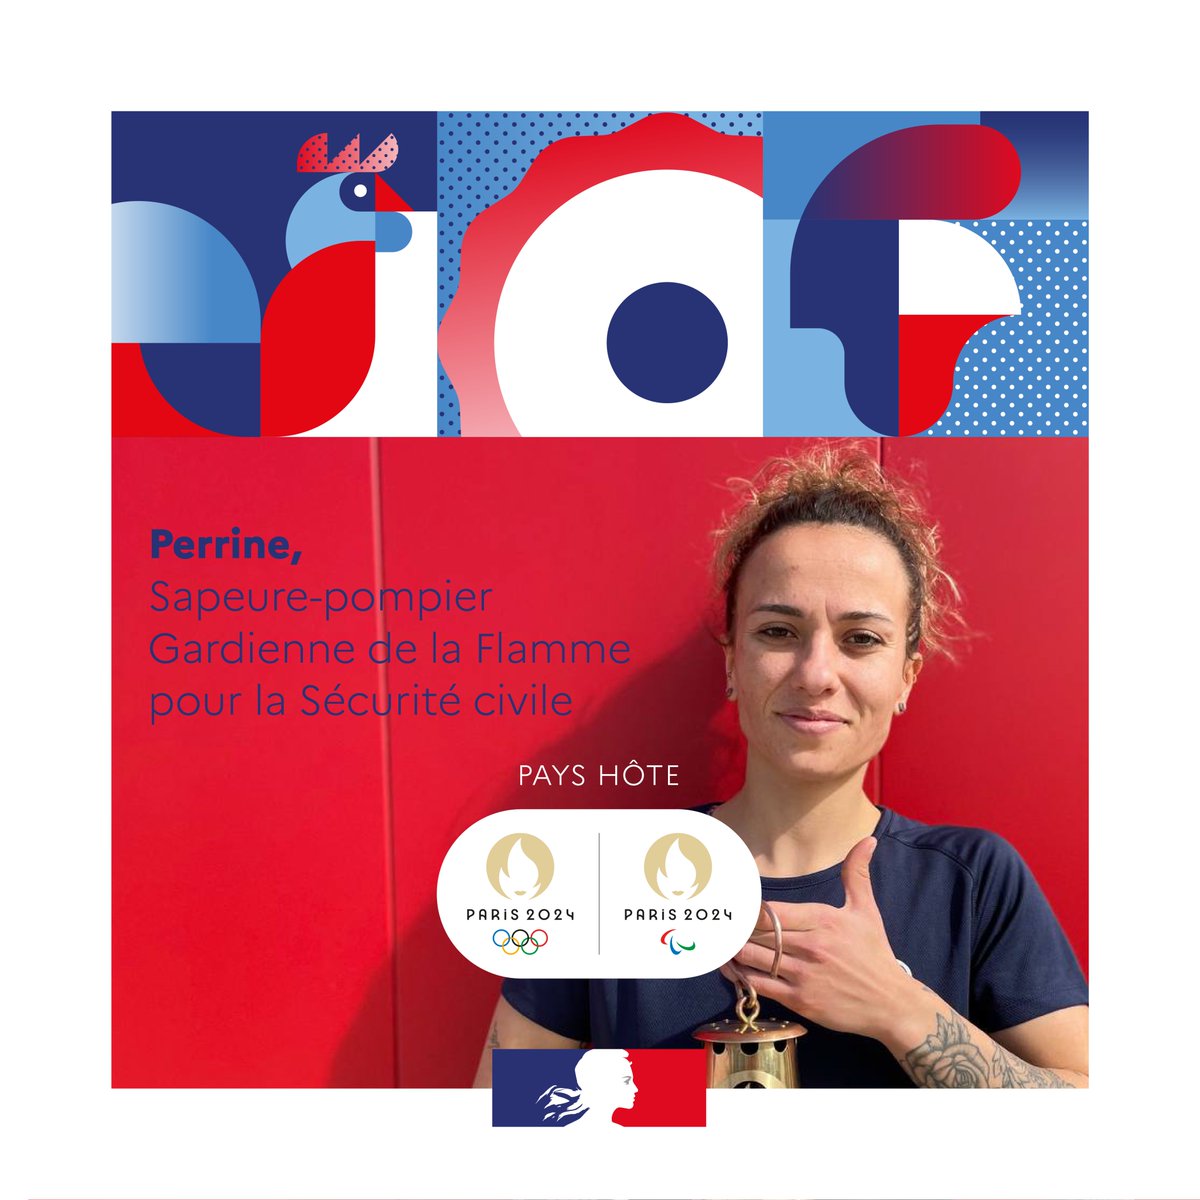 #EquipeDesFrançais 🔥 | Perrine est Sapeure-pompier en #Gironde, elle fait partie des 25 gardiens de la Flamme Olympique pour la @SecCivileFrance. 

✔️ Son rôle, veiller à ce qu'elle ne s'éteigne jamais. 

En savoir ➕ : gironde.gouv.fr/Actions-de-l-E…